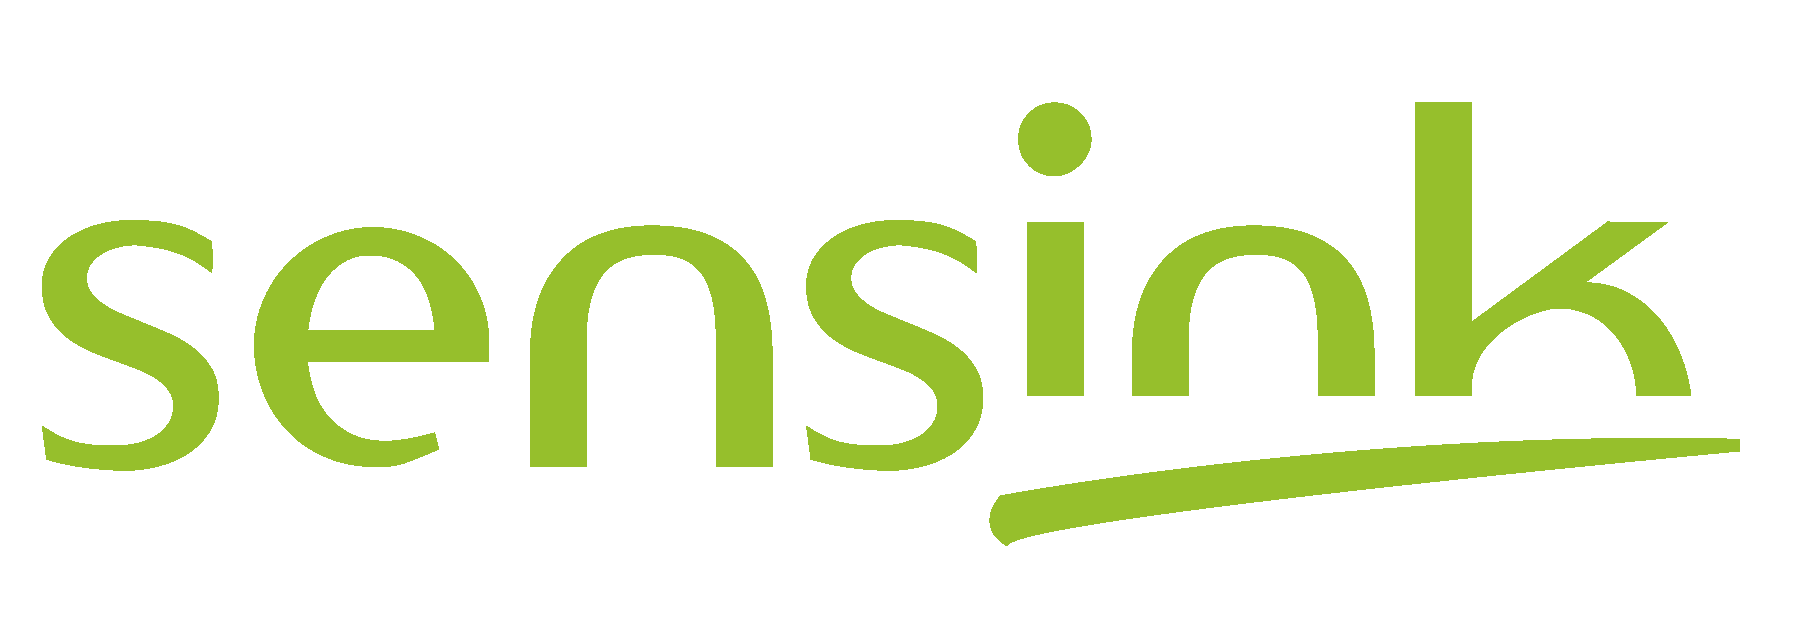 Logo sensink 2020 hd 002